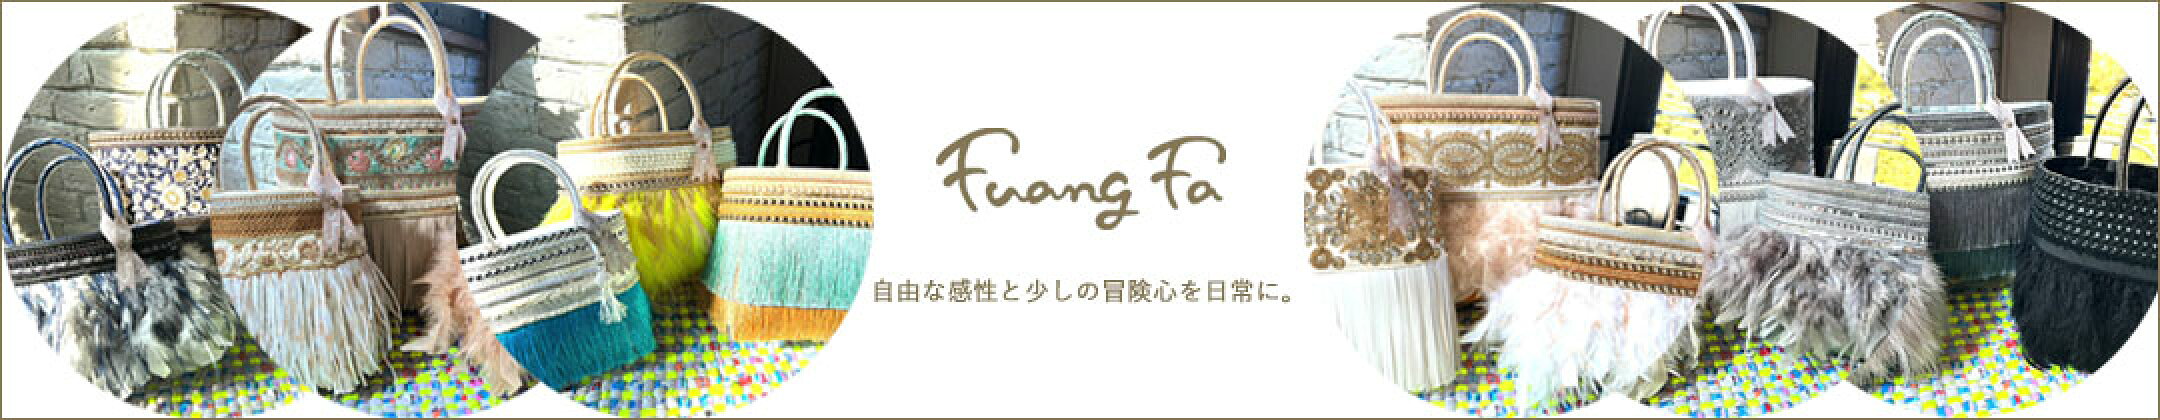 自由な感性と少しの冒険心を日常に。【Fuang fa】ファンファ・羽根＆フリンジバッグ